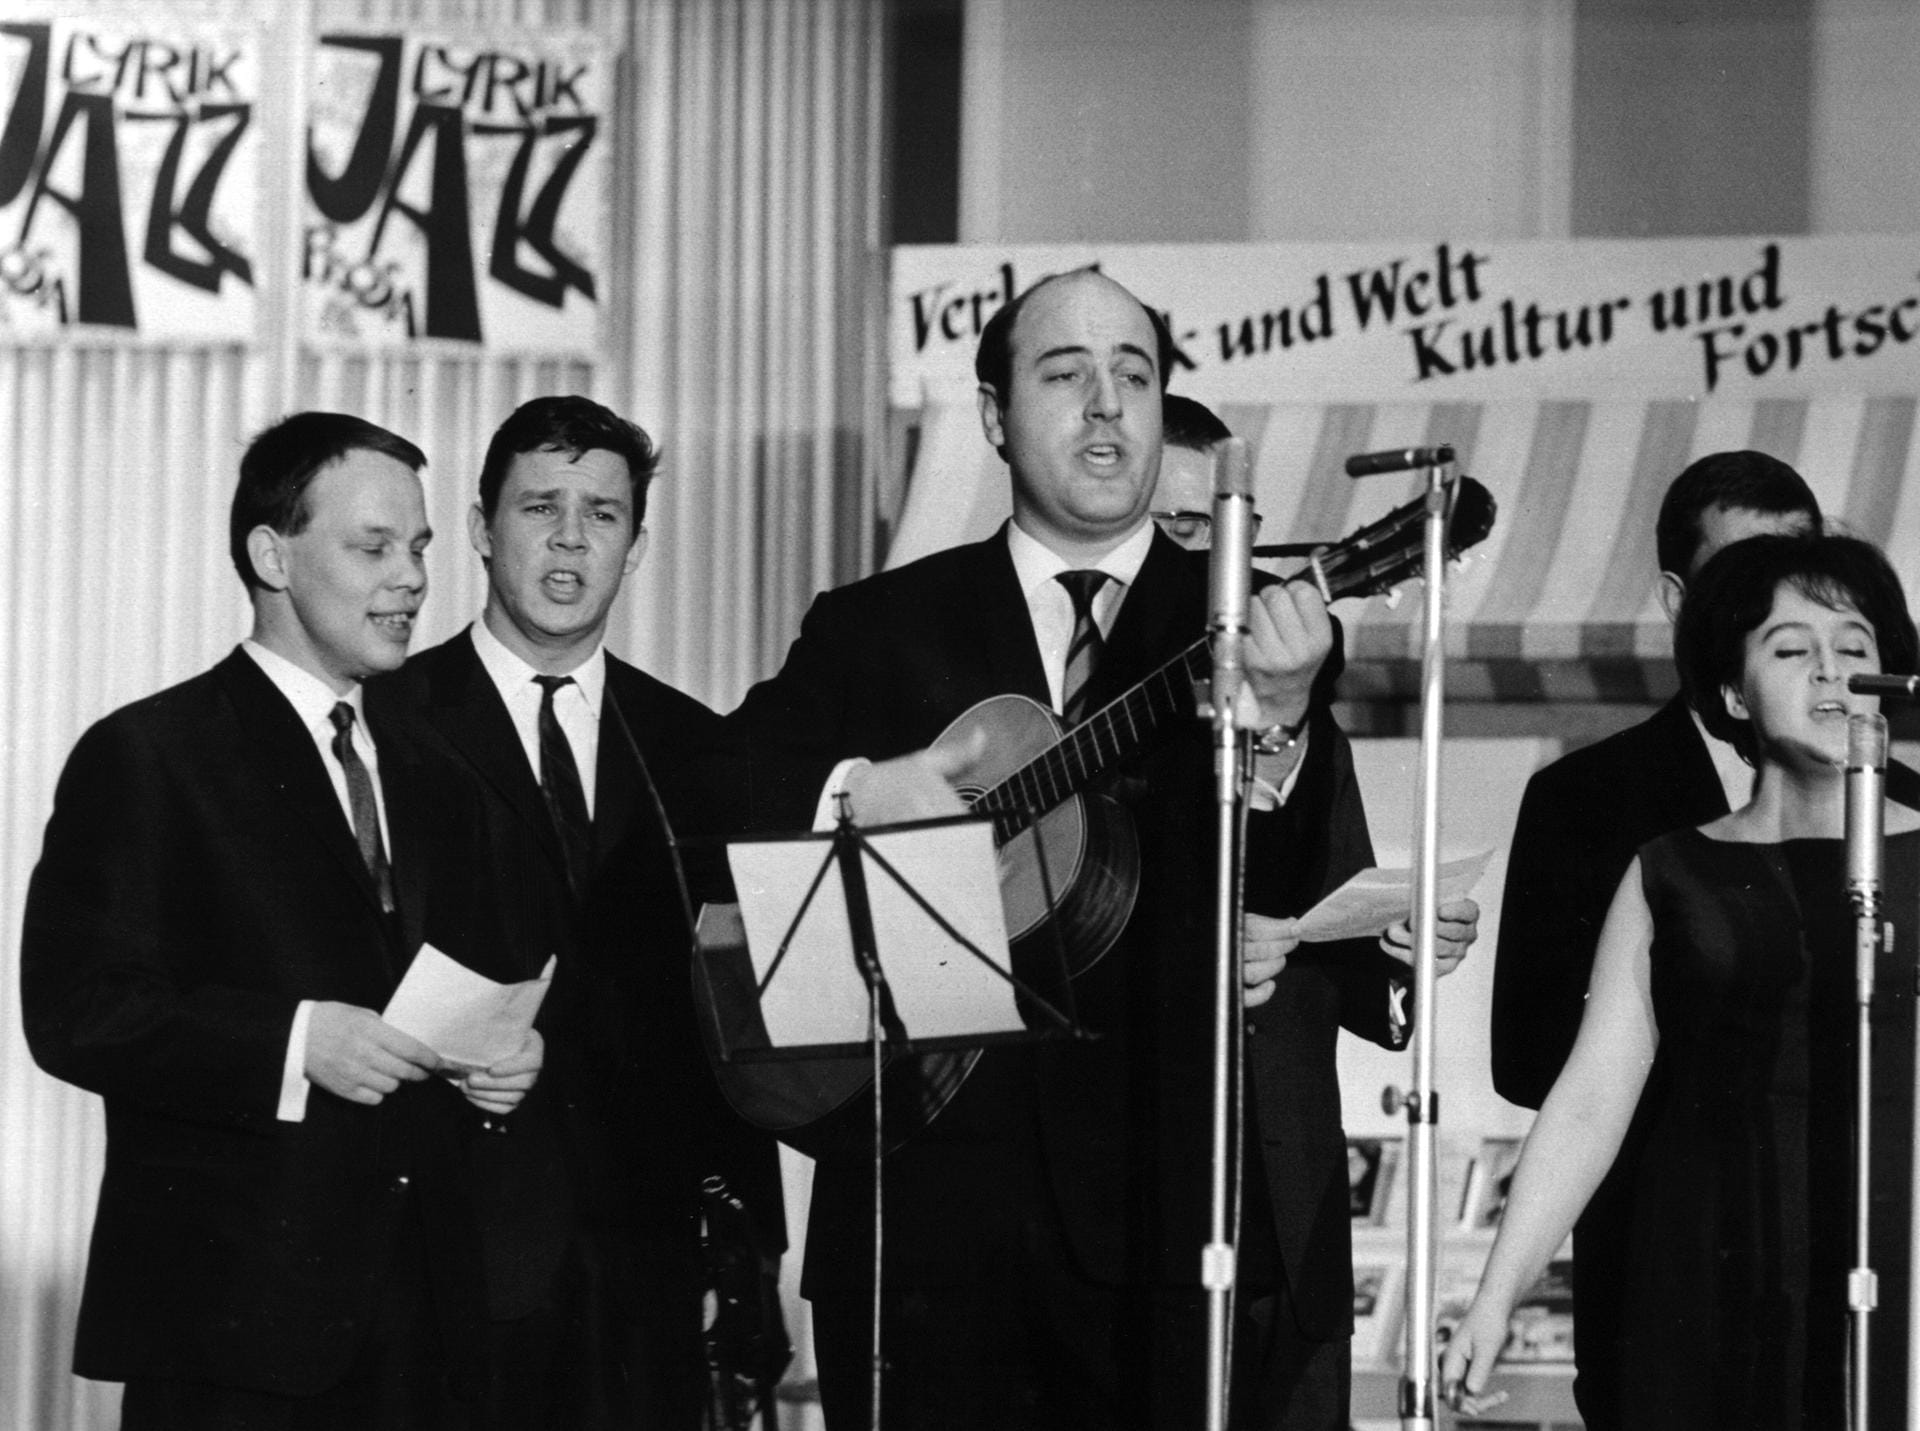 Doch Krug war nicht nur Schauspieler, sondern auch leidenschaftlicher Musiker. Hier ist er im Jahr 1965 beim Auftritt der "Jazz-Optimisten" in der Kongresshalle am Berliner Alexanderplatz zu sehen.